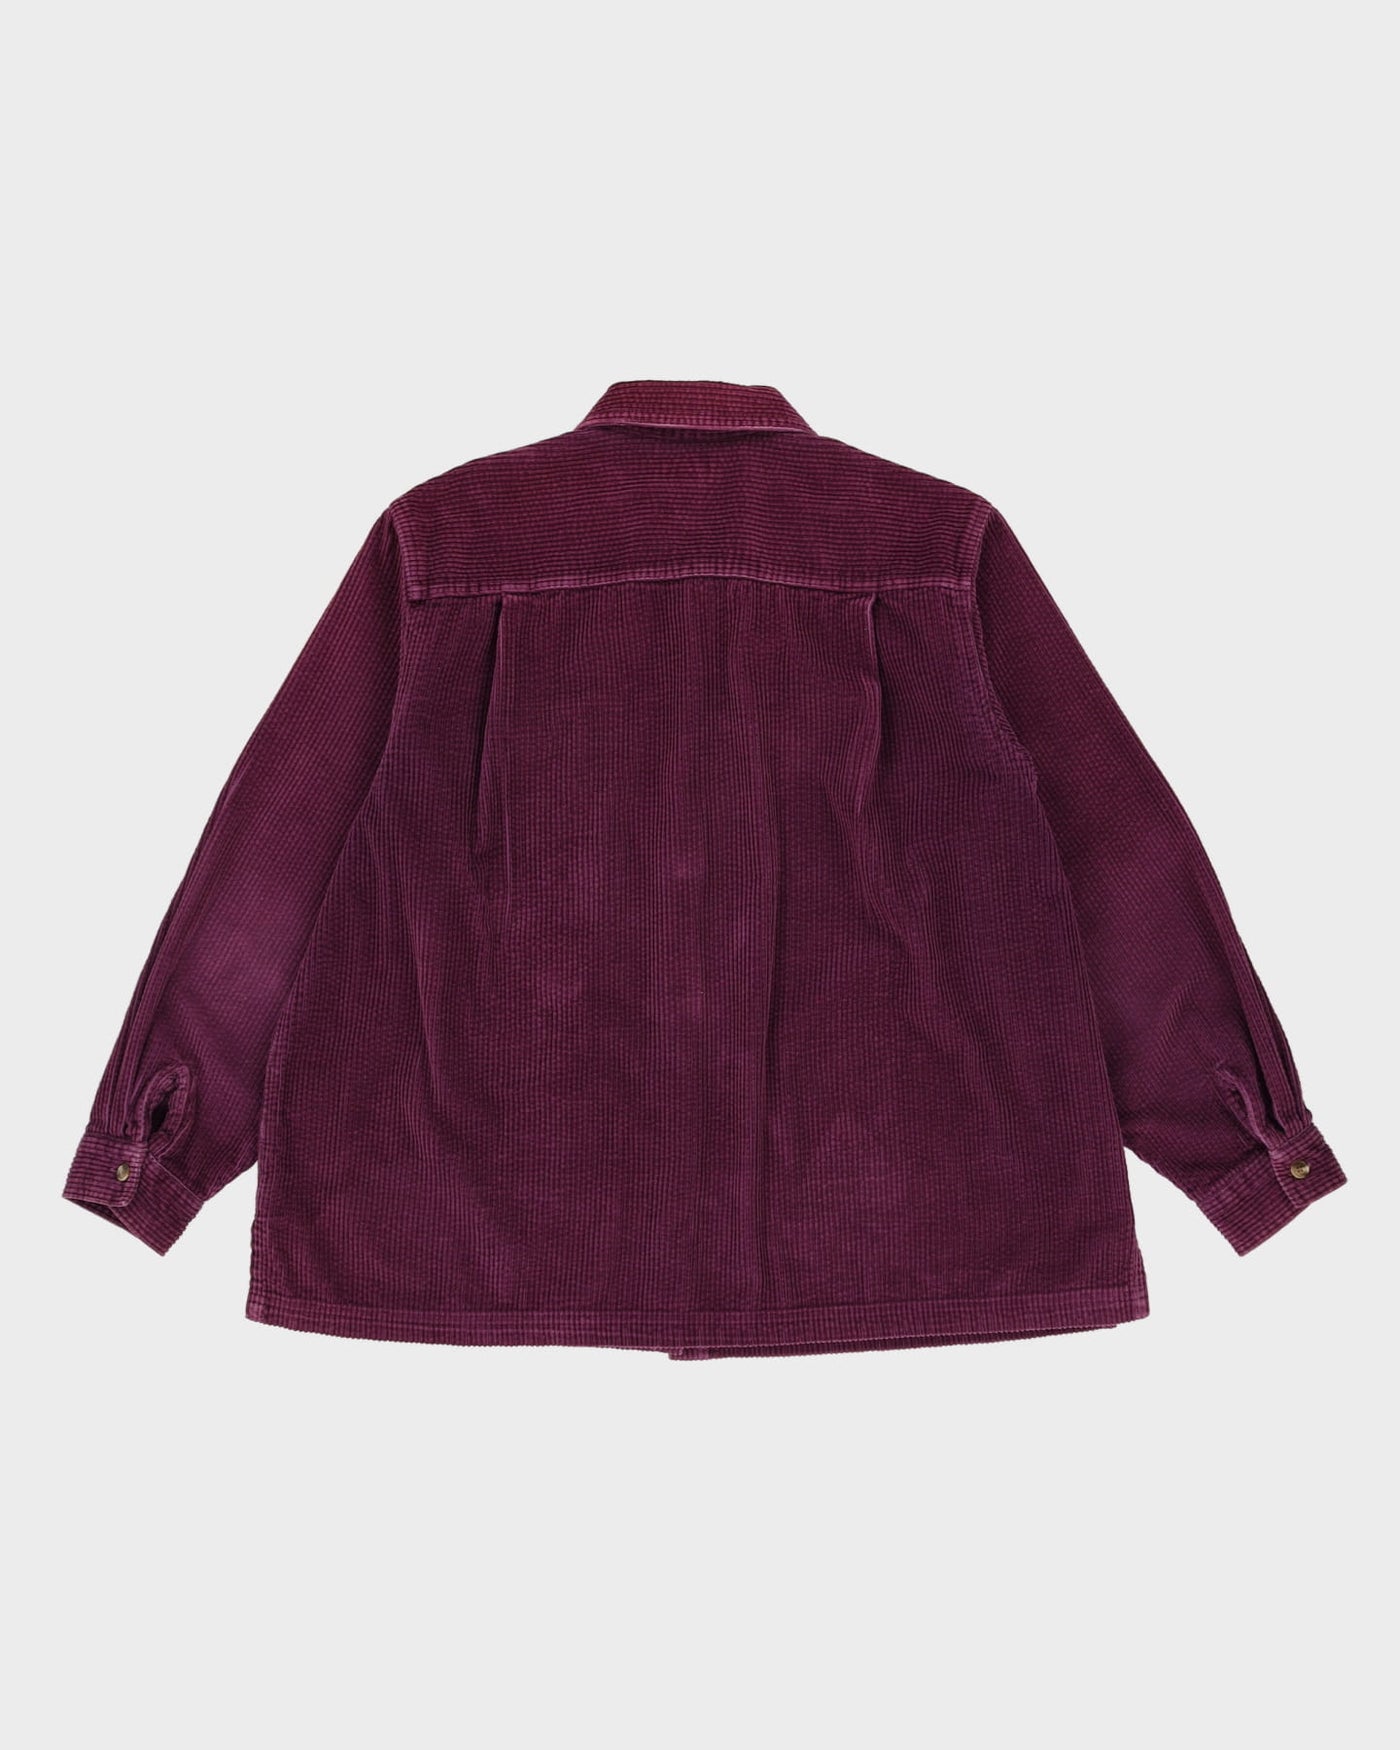 L.L. Bean Purple Cord Shirt Style Jacket - L / XL